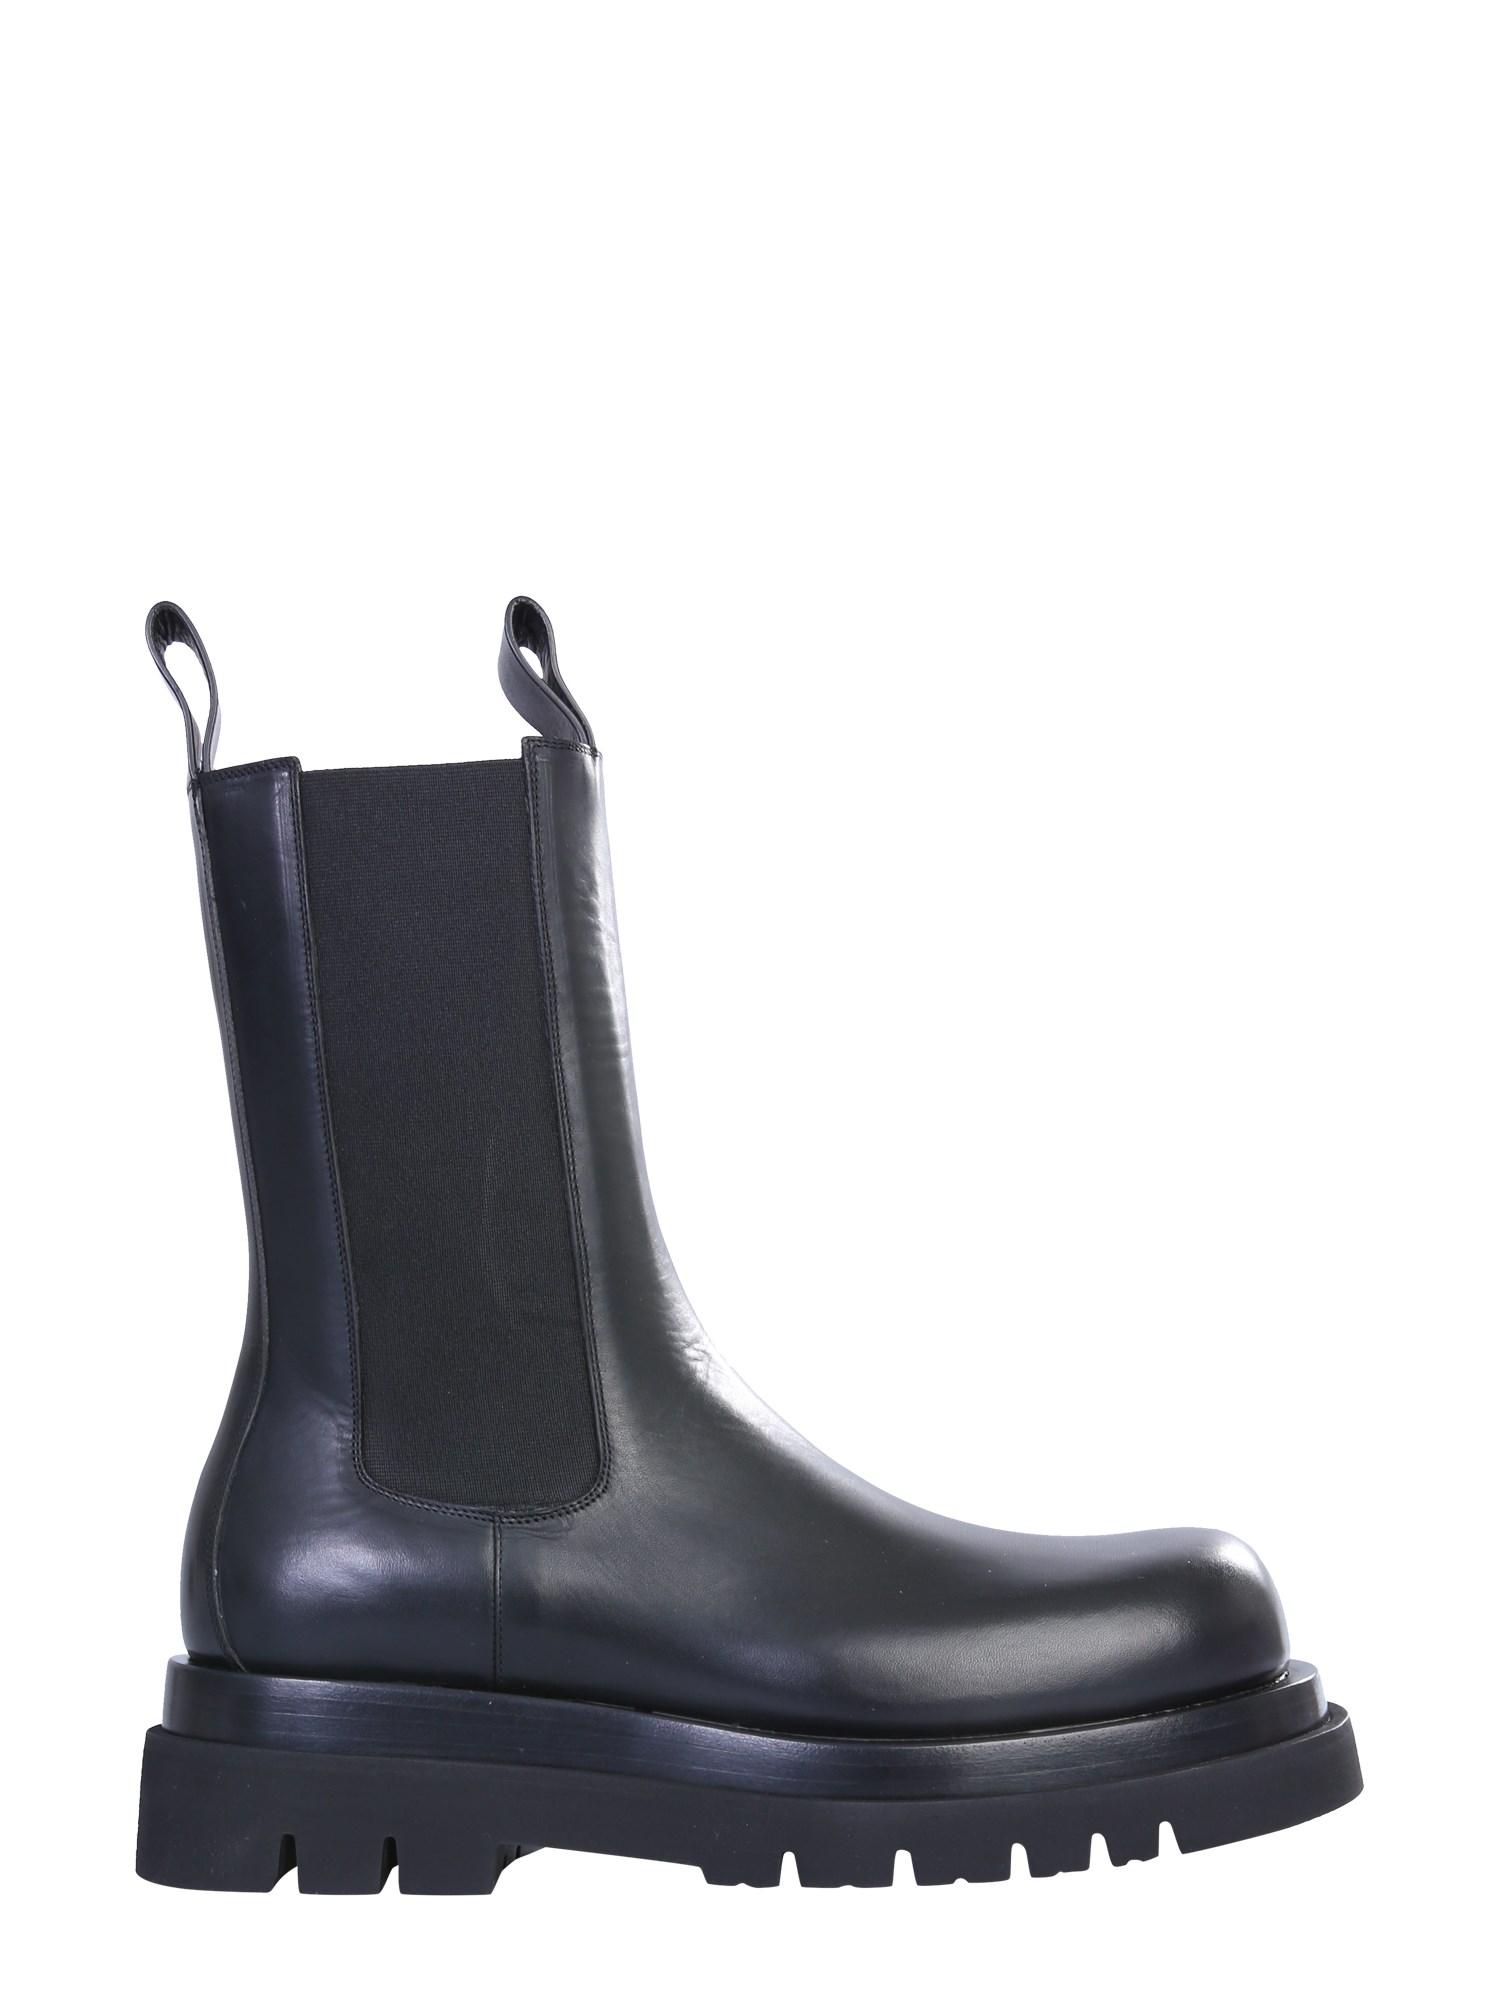 Bottega Veneta Chelsea Bv Lug Leather Boots in Black for Men - Lyst